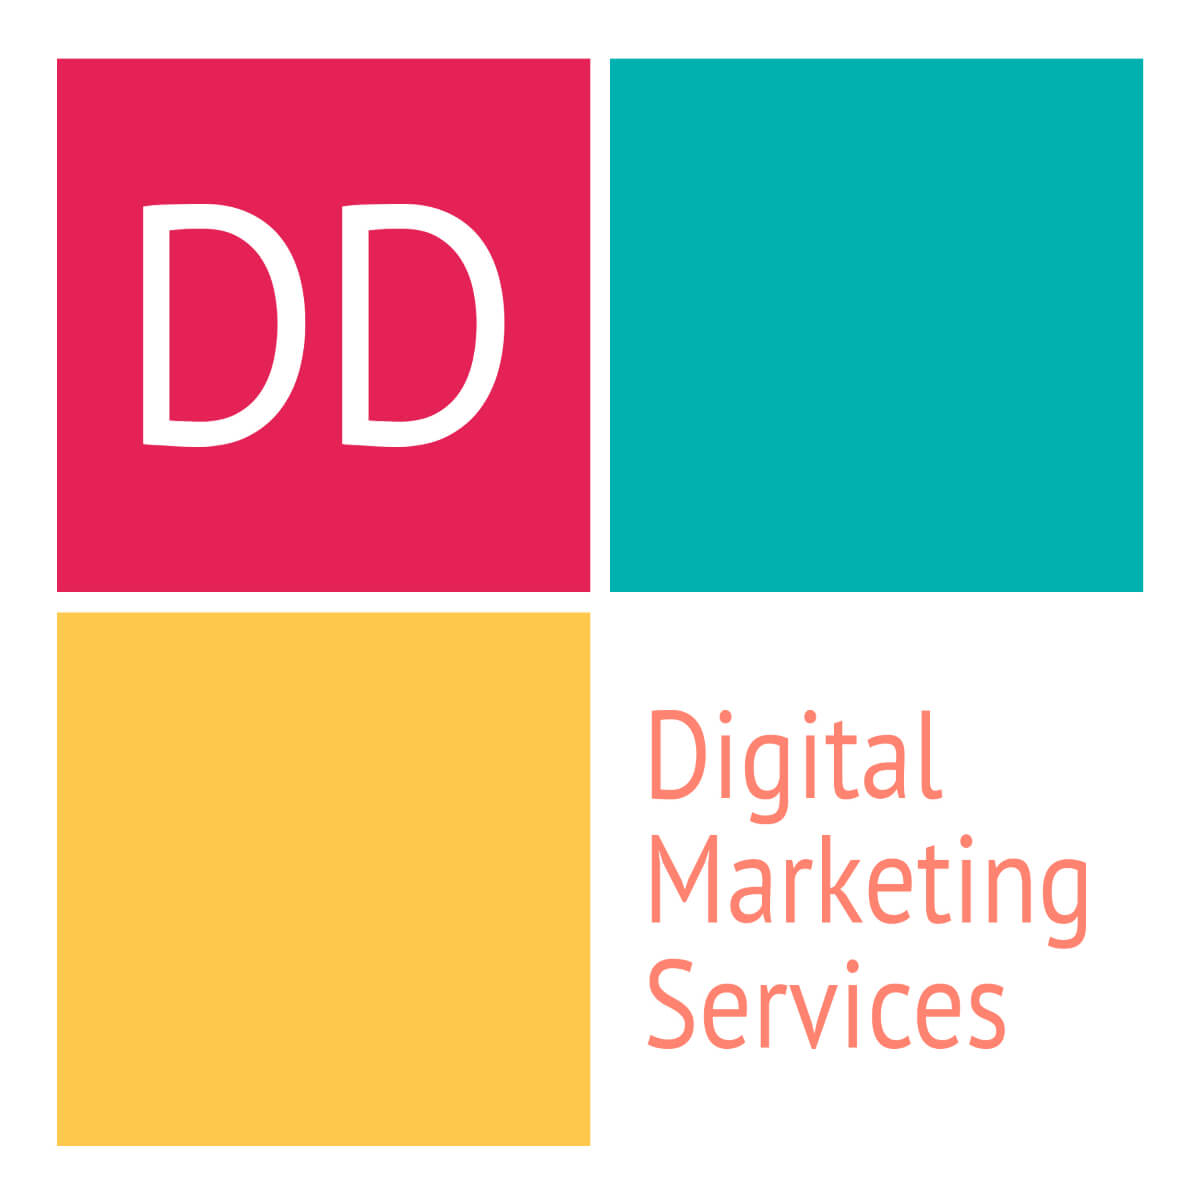 DD Digital Marketing Services (Freelance)